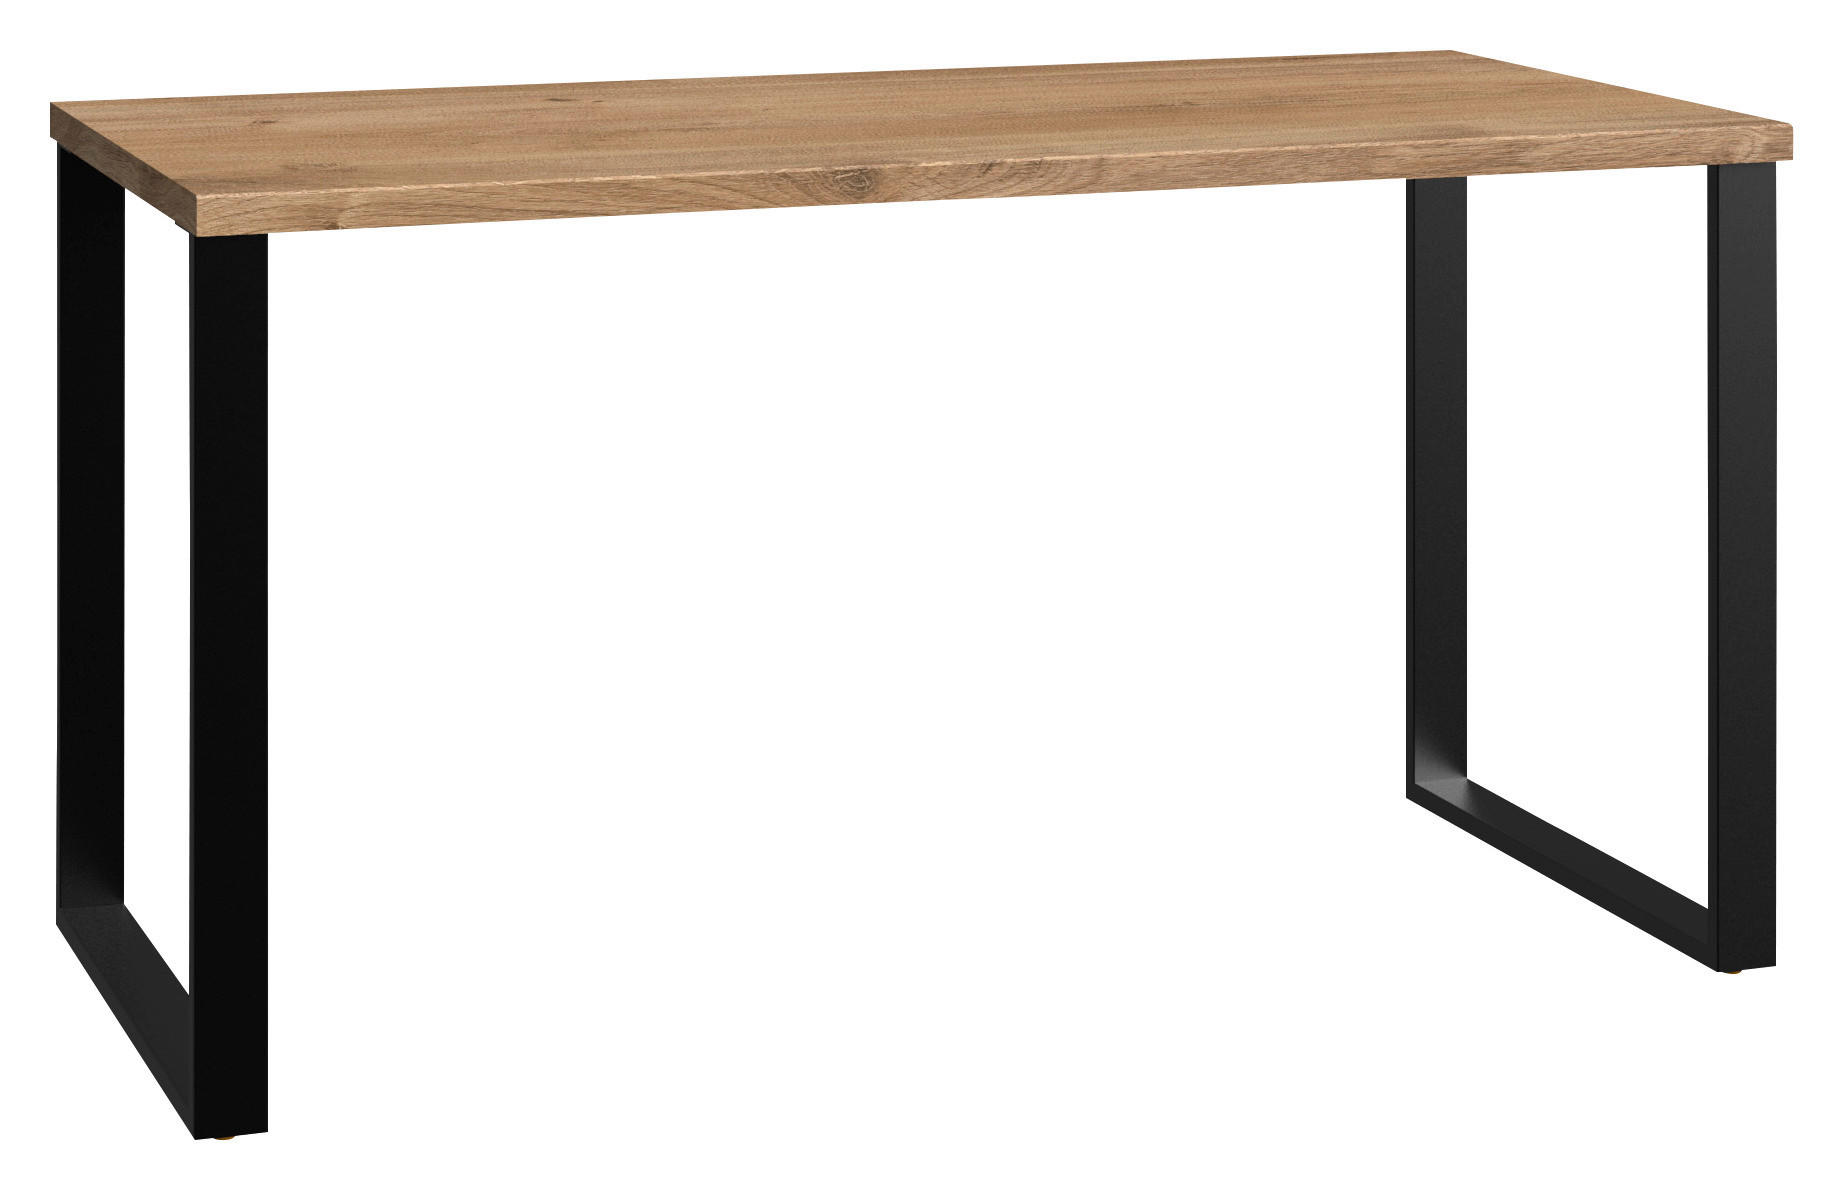 Schreibtisch in Eichefarbe 140/70/74 cm  - Eichefarben/Graphitfarben, Design, Holzwerkstoff/Metall (140/70/74cm) - MID.YOU